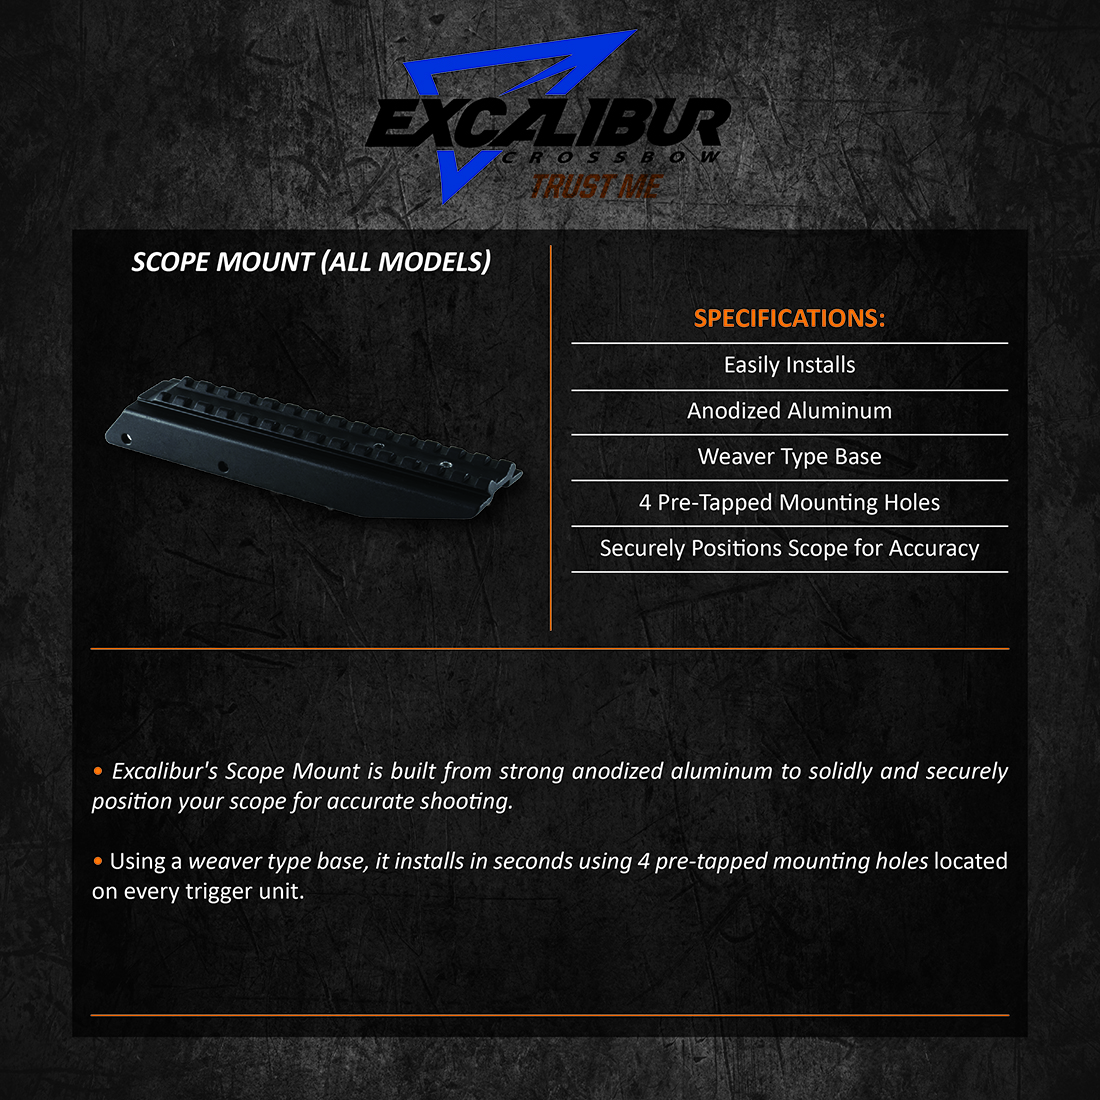 Excalibur_Scope_Mount_AllModels_Product_Description